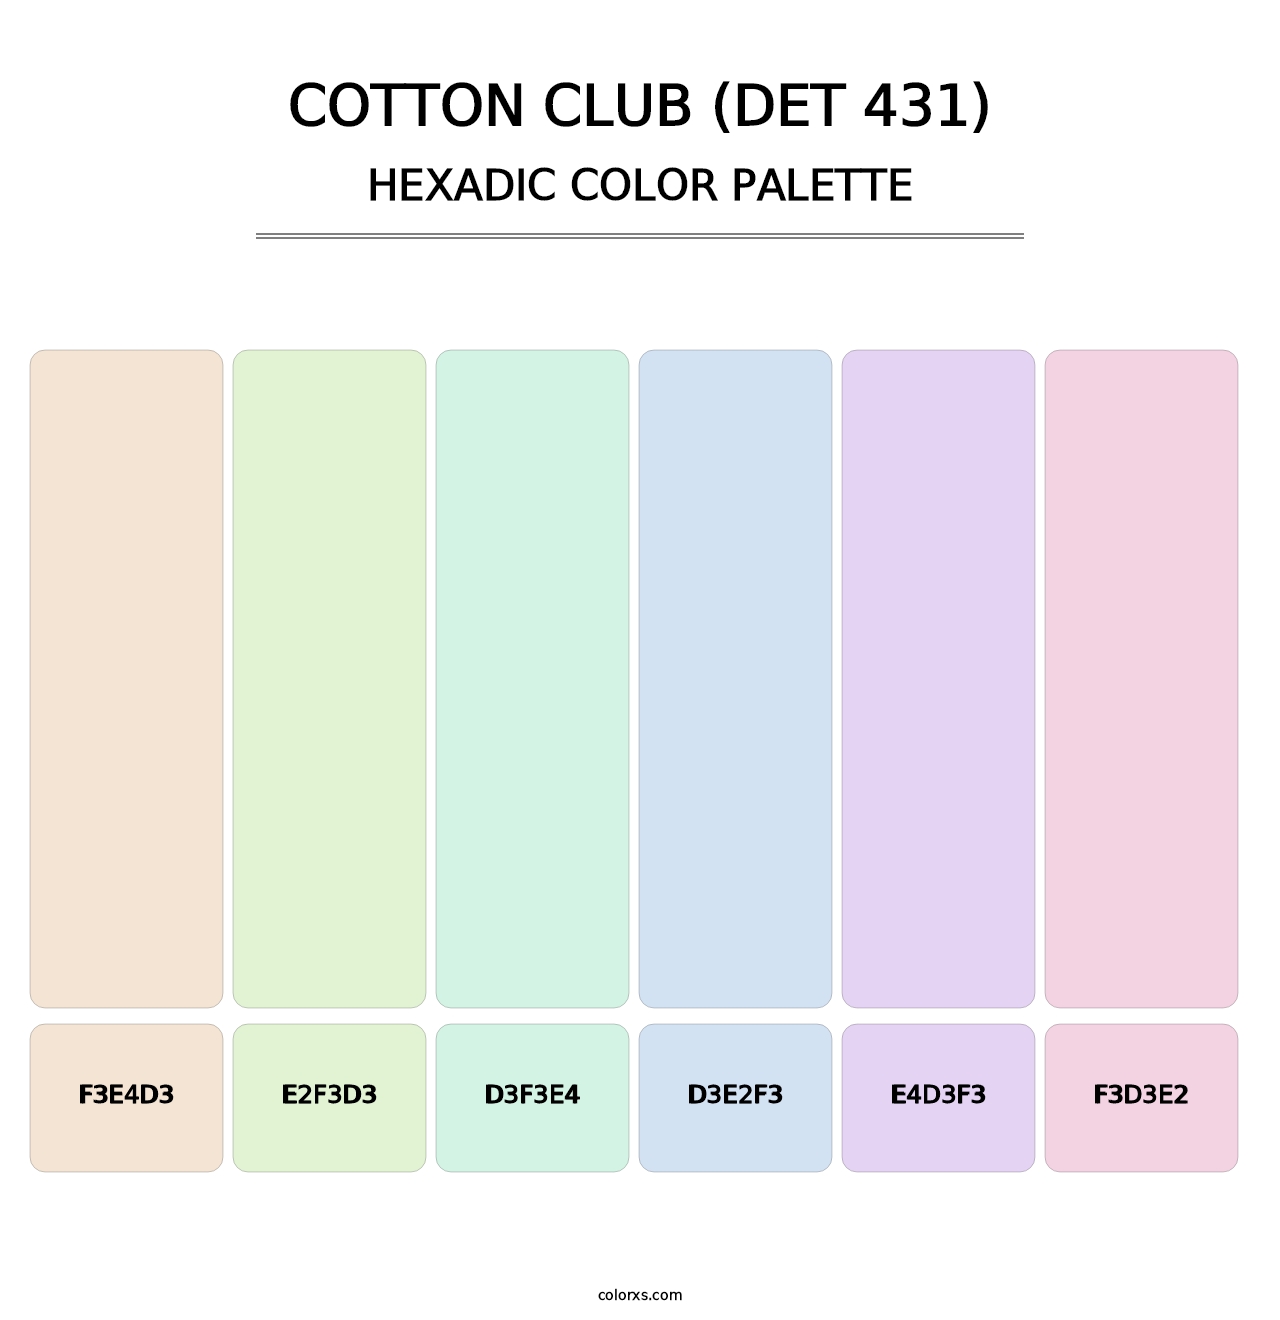 Cotton Club (DET 431) - Hexadic Color Palette